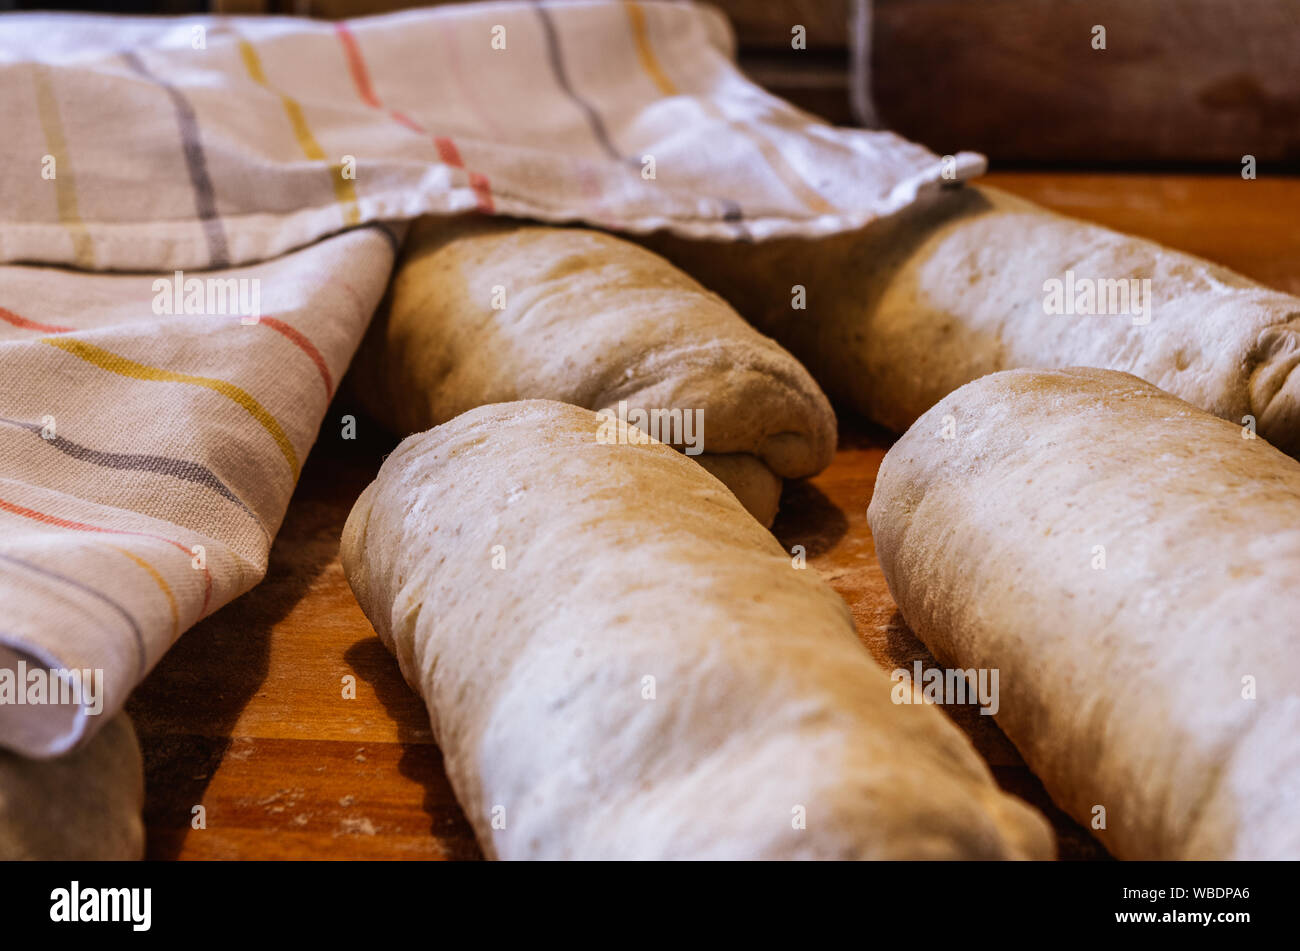 Rotoli di pasta lievitata in attesa di essere formati in baguette francese per la cottura Foto Stock